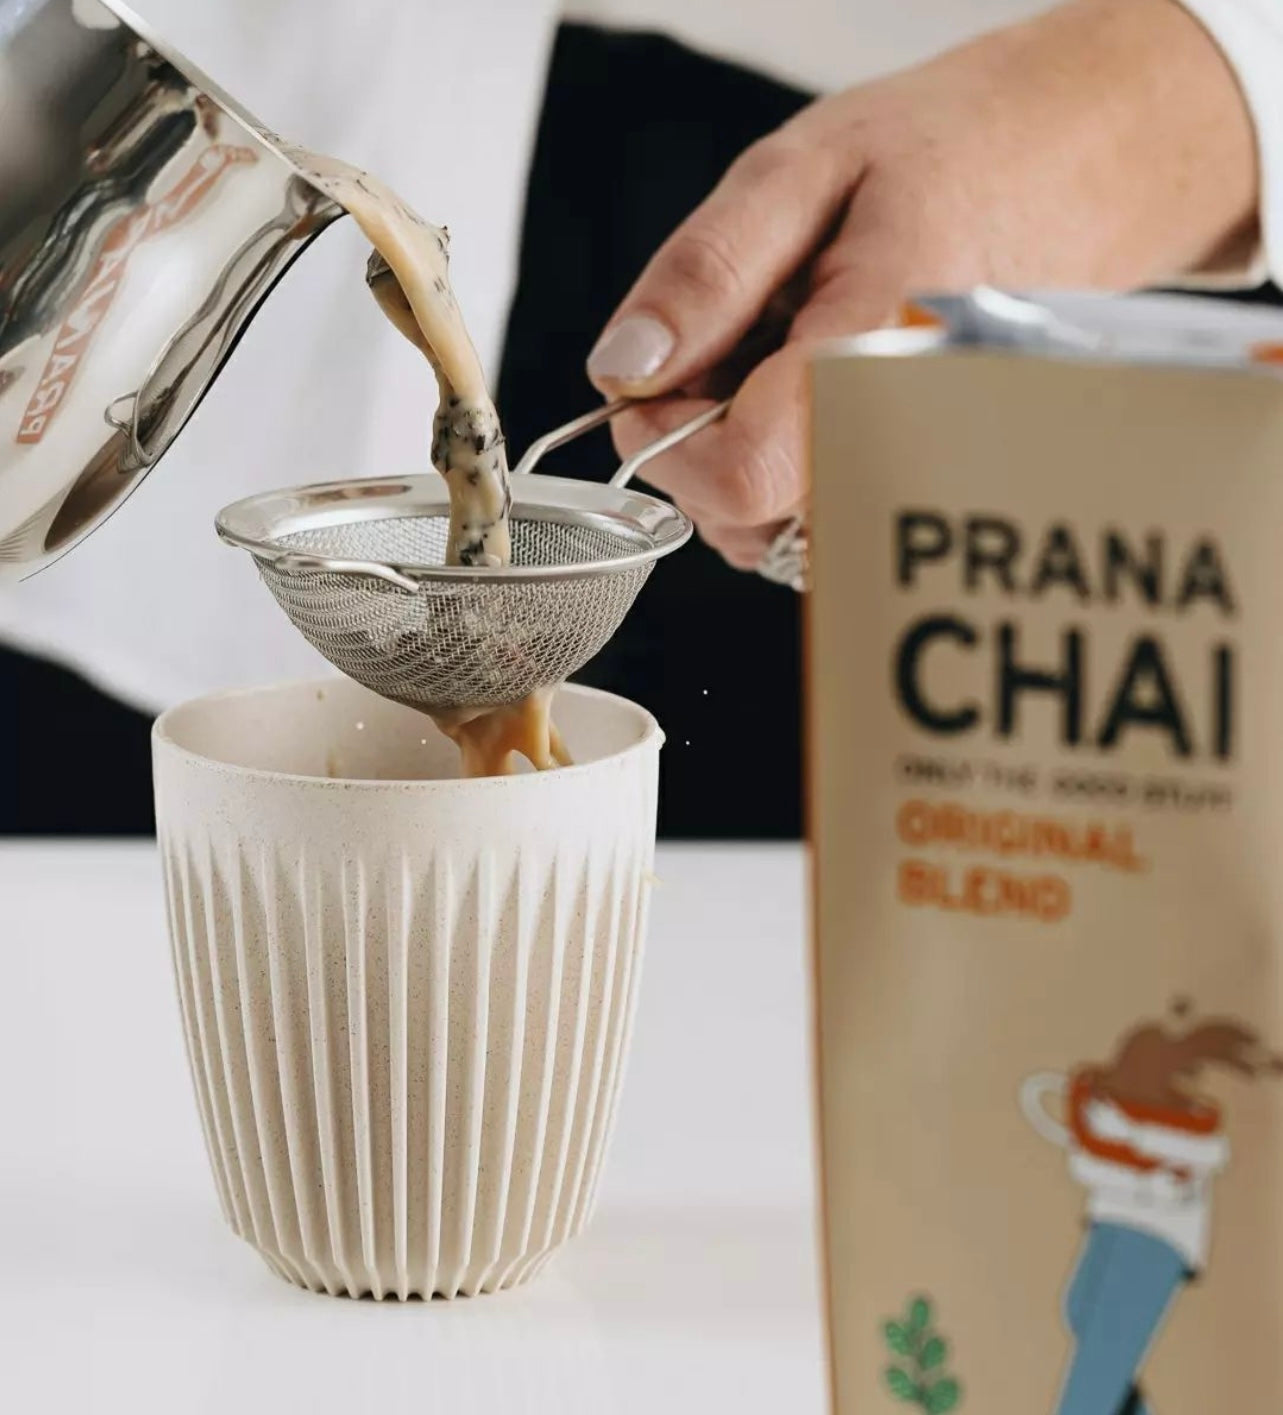 prana chai original blend being poured into mug